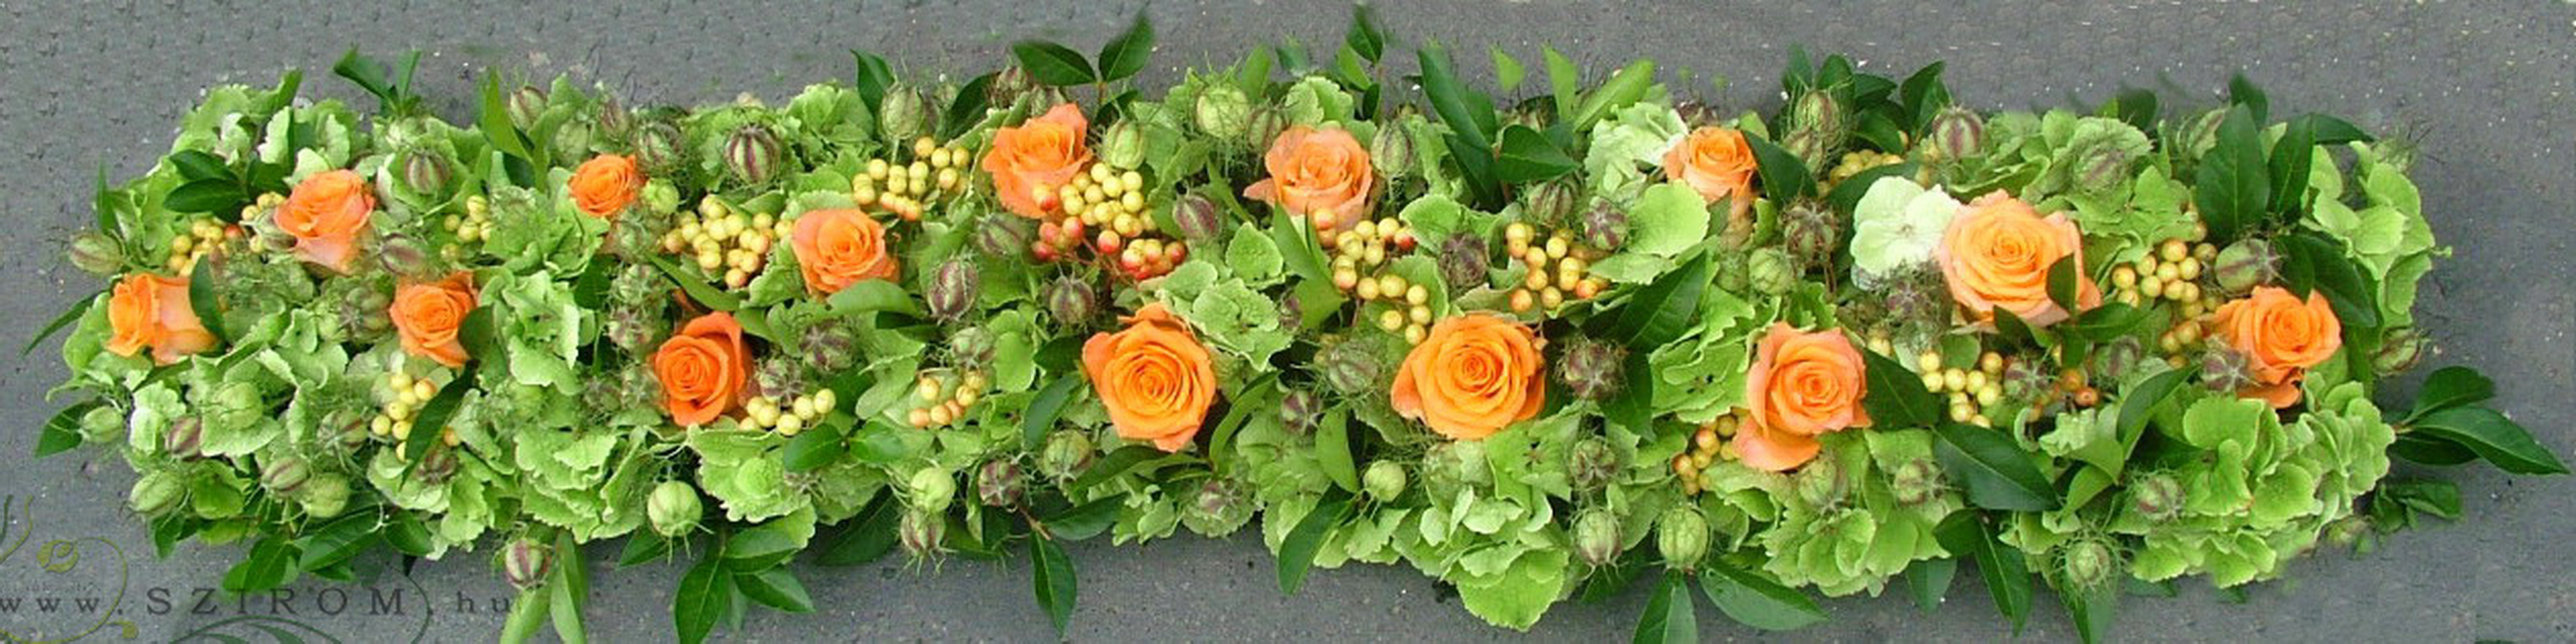 Virágküldés Budapest - Főasztaldísz (rózsa, hortenzia, narancs, zöld), esküvő